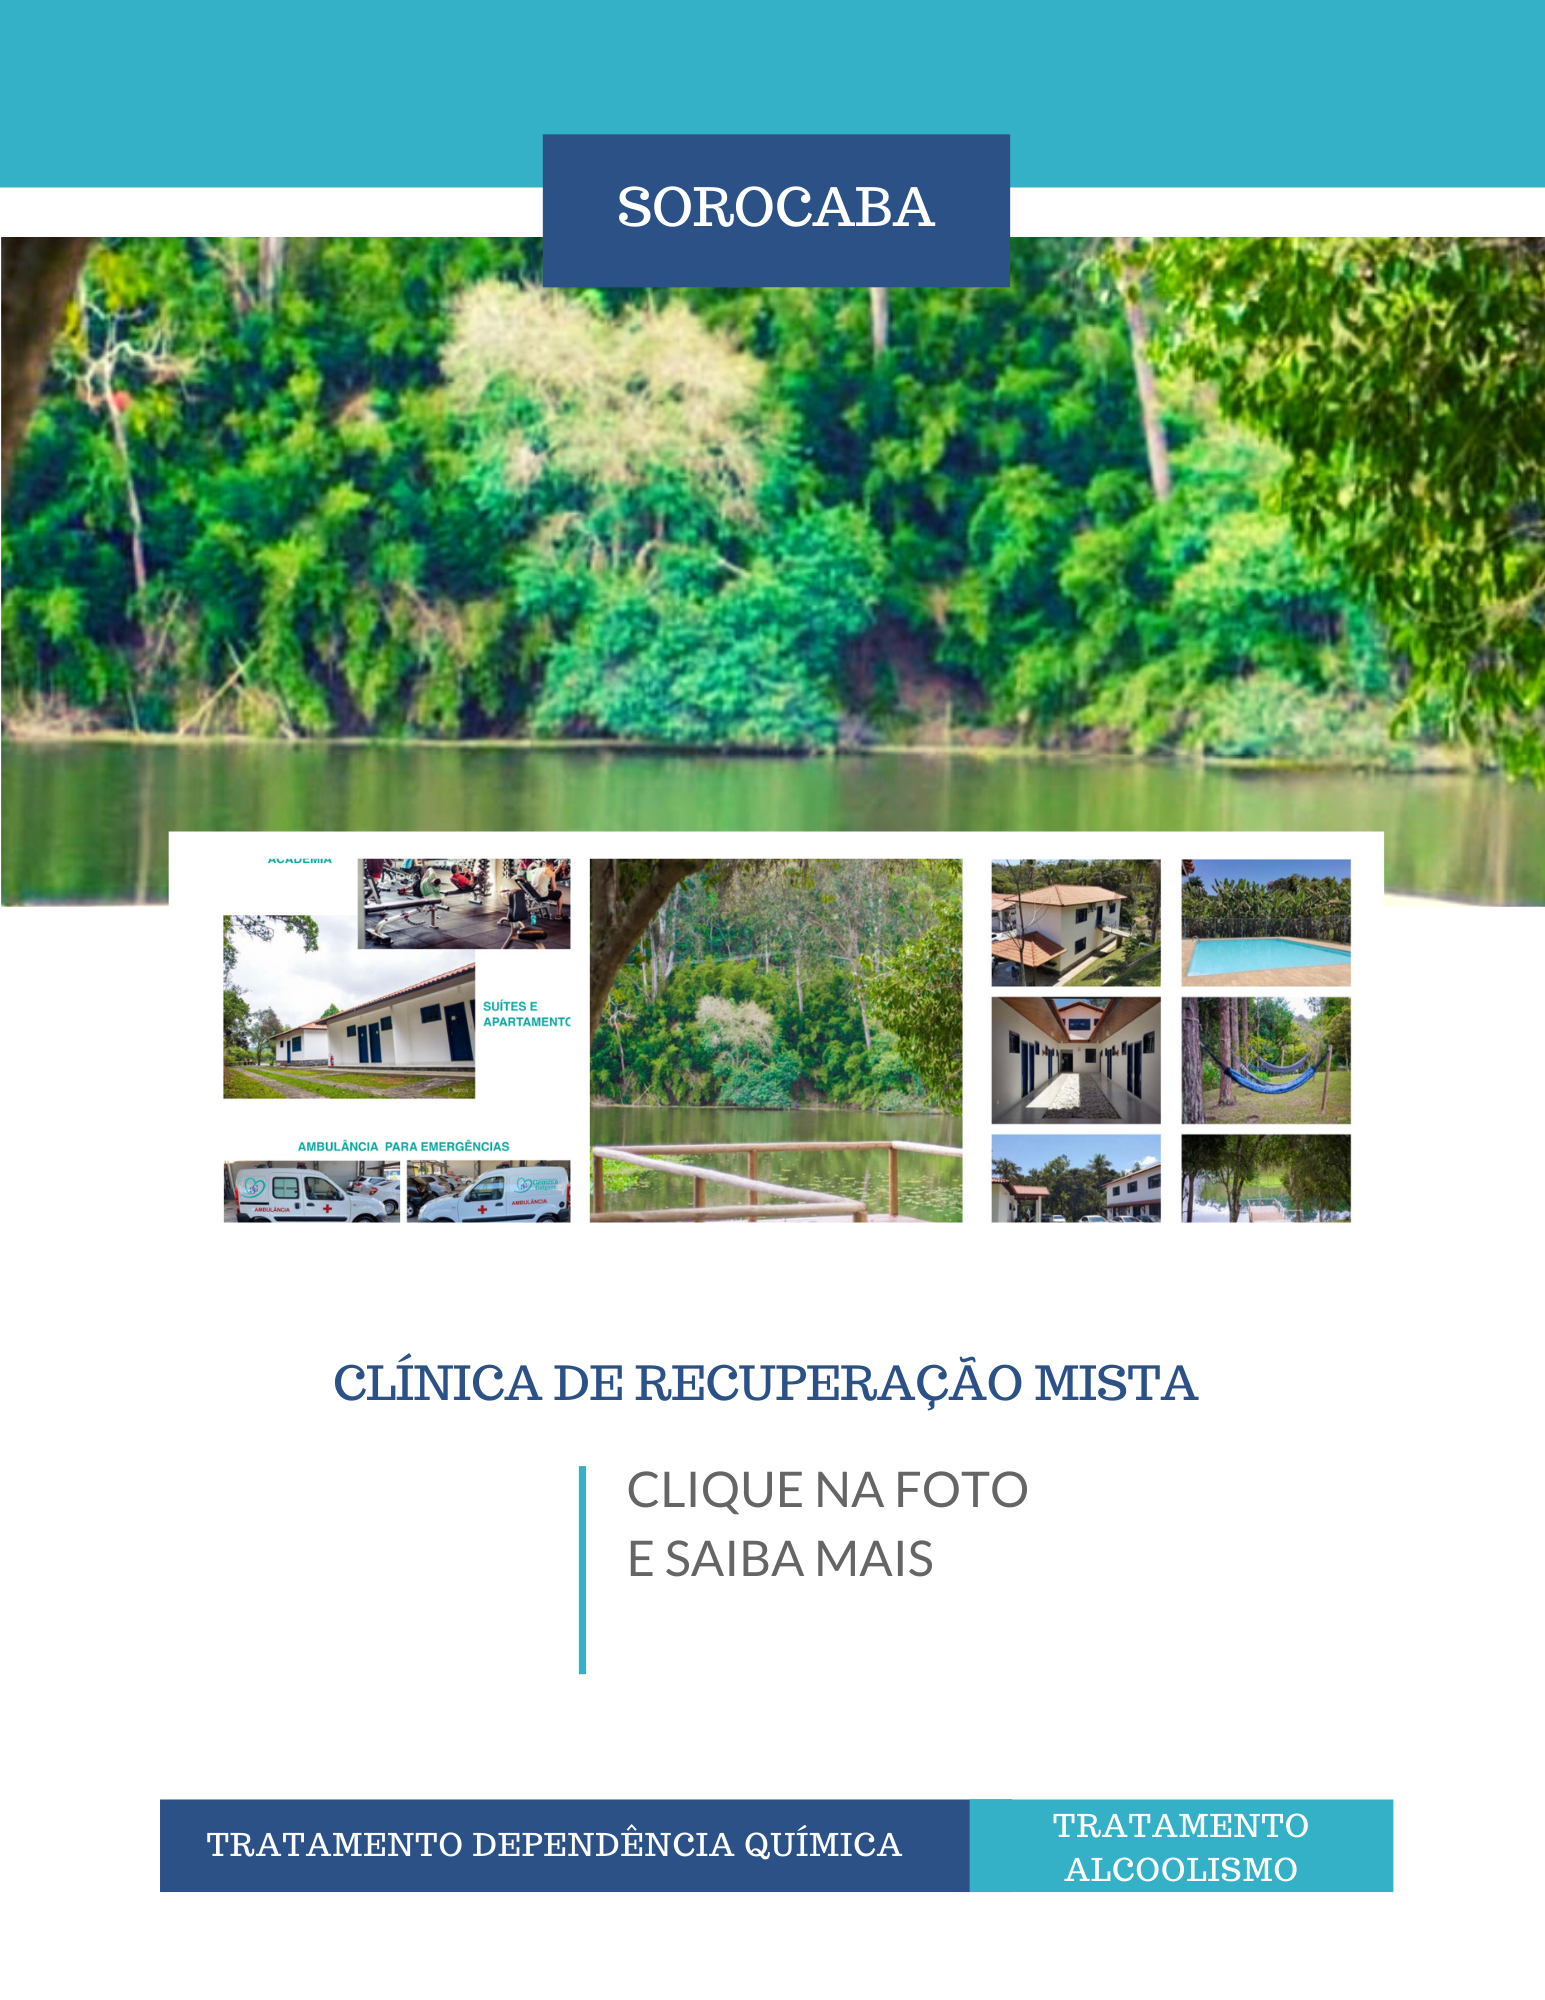 Clinica de recuperação em São Paulo